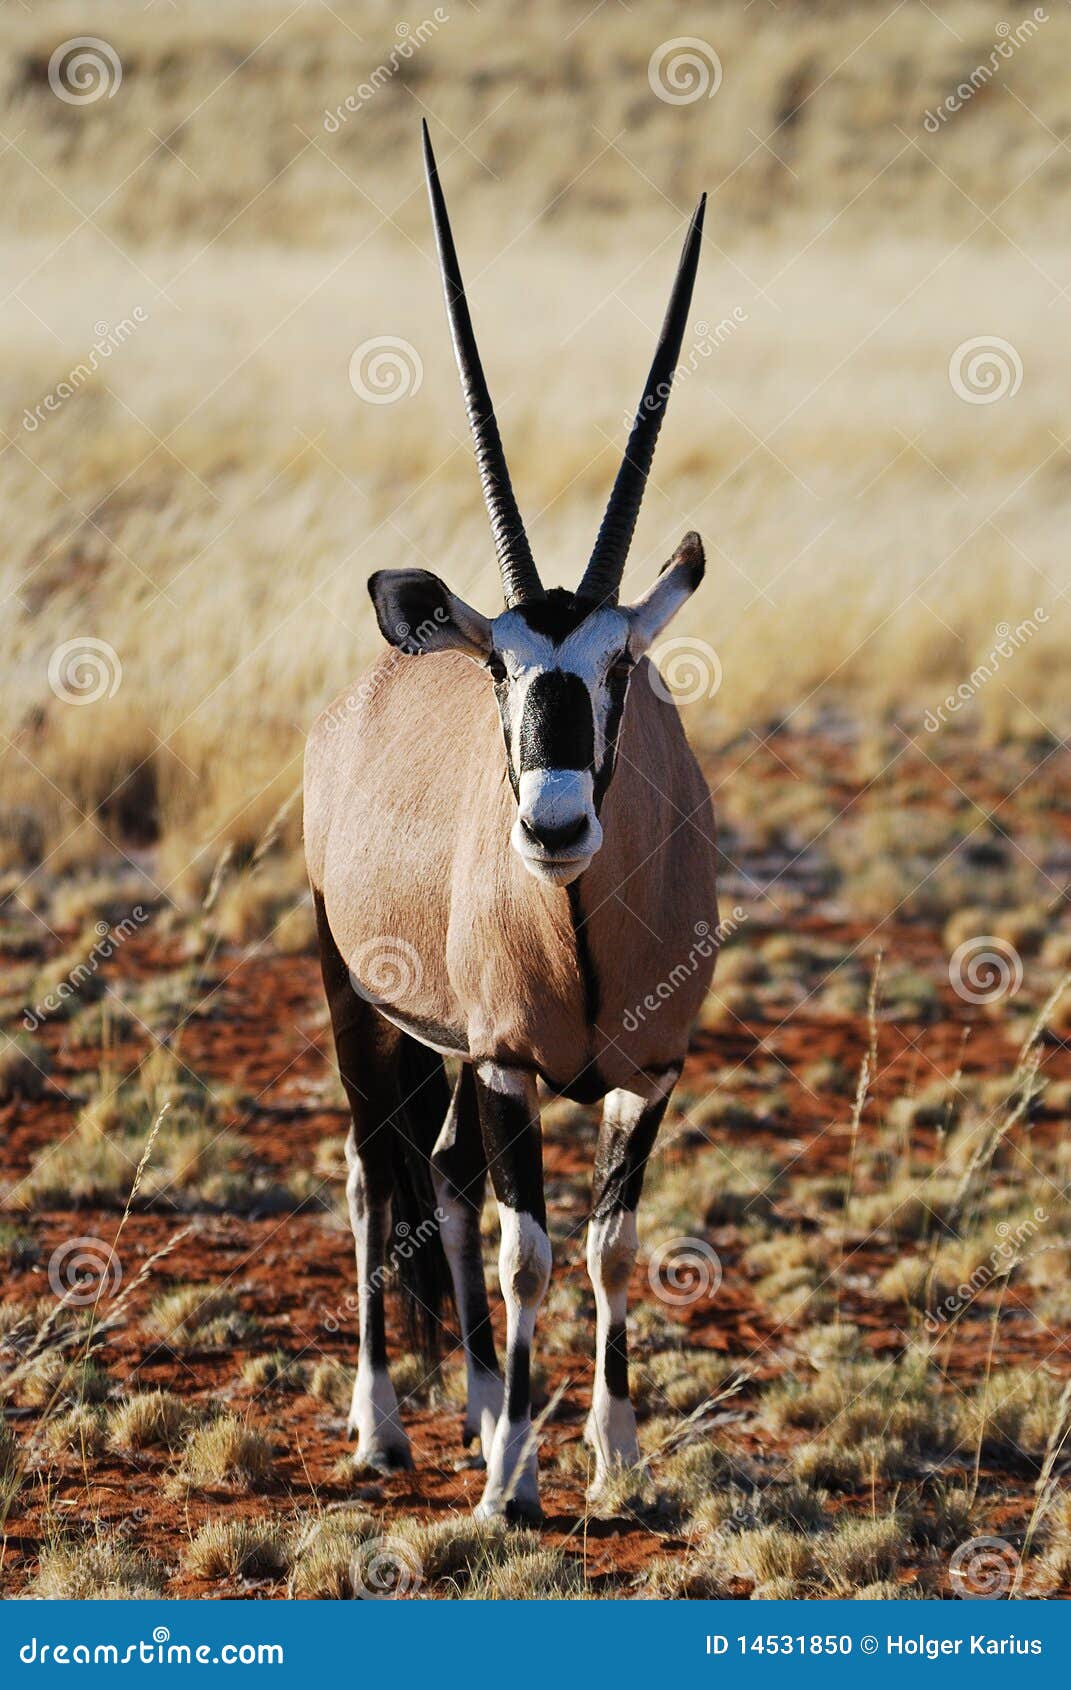 gemsbok (oryx gazella)